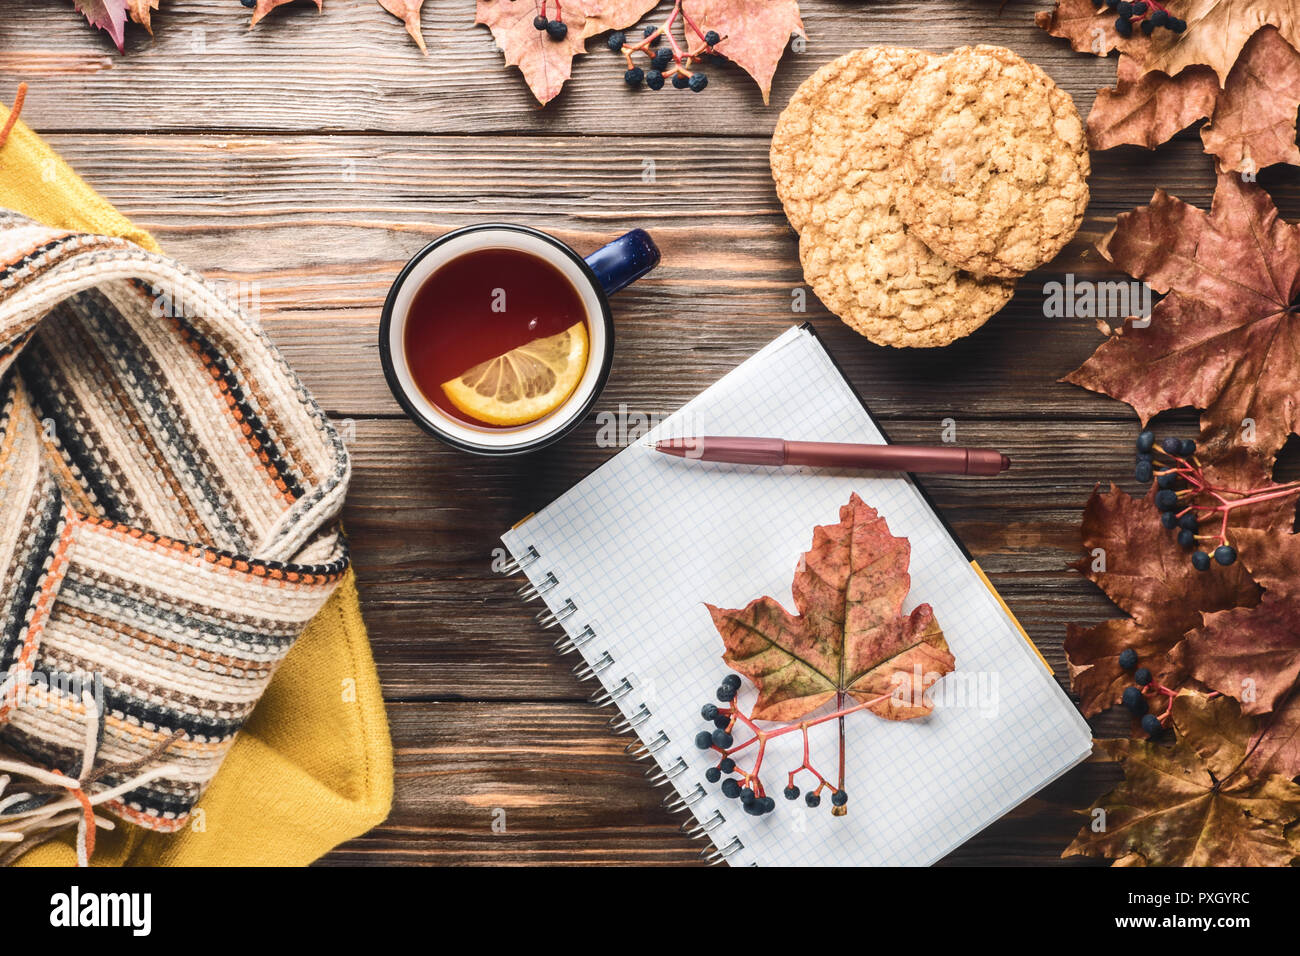 Herbst Mode saisonale Konzept gelb warm weicher Pullover skandinavischen Strickschal Tasse heißer schwarzer Tee Kaffee Fallen gefallen Ahornblätter auf hölzernen Tisch Stockfoto